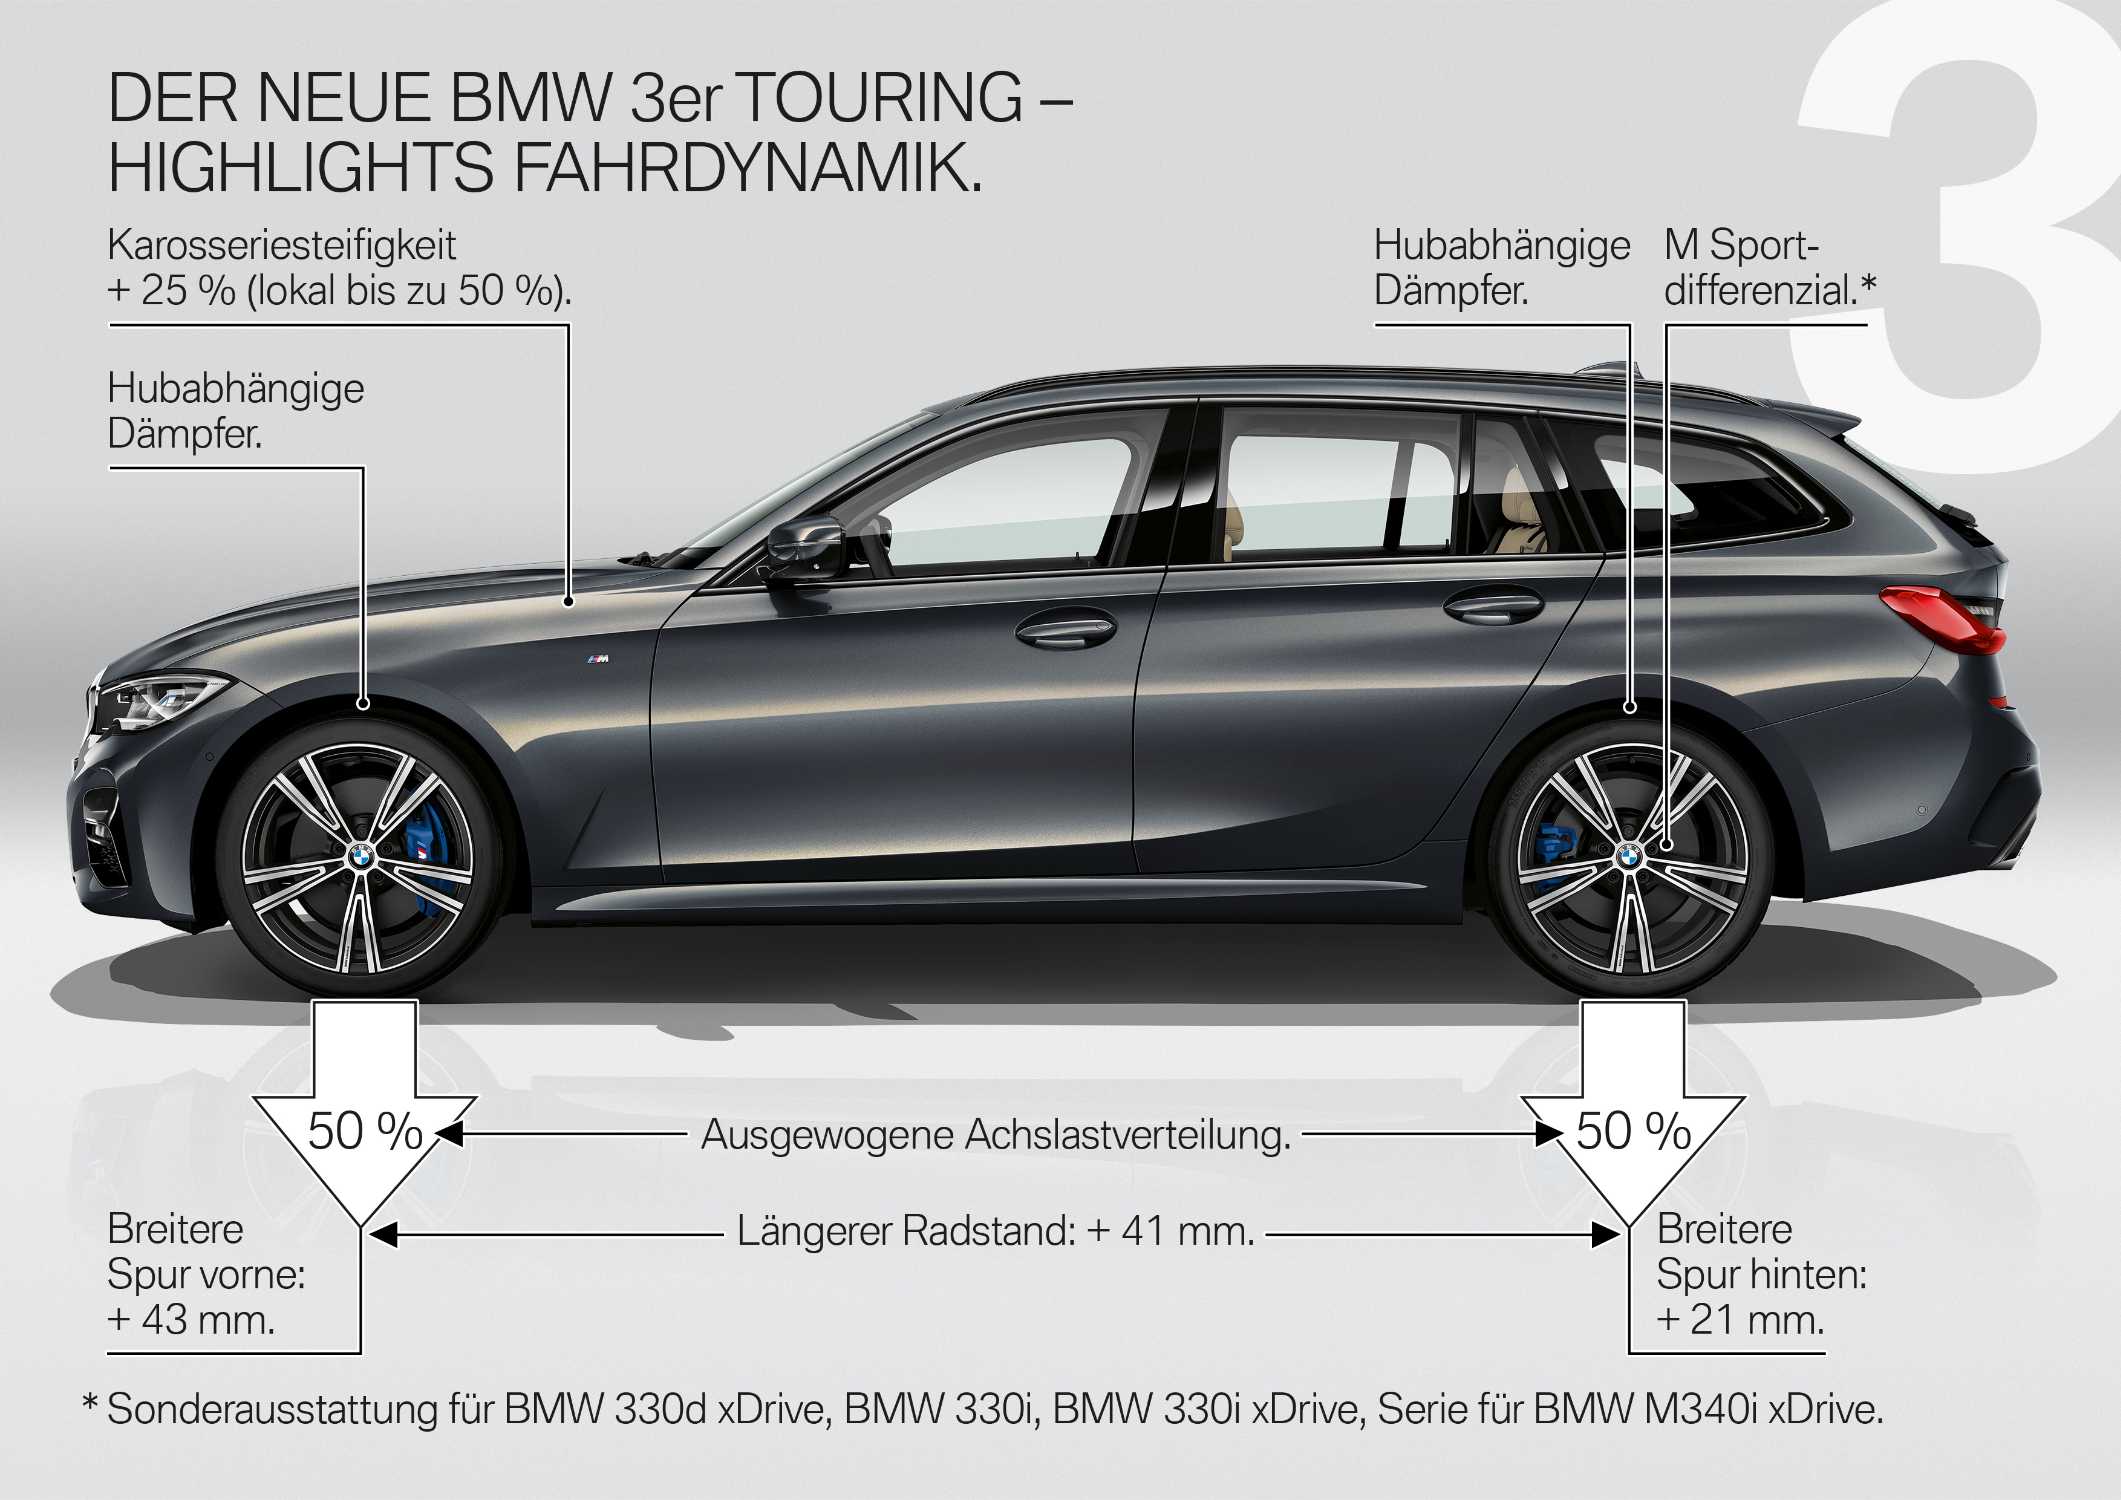 Der neue BMW 3er Touring – Produkthighlights (06/2019).